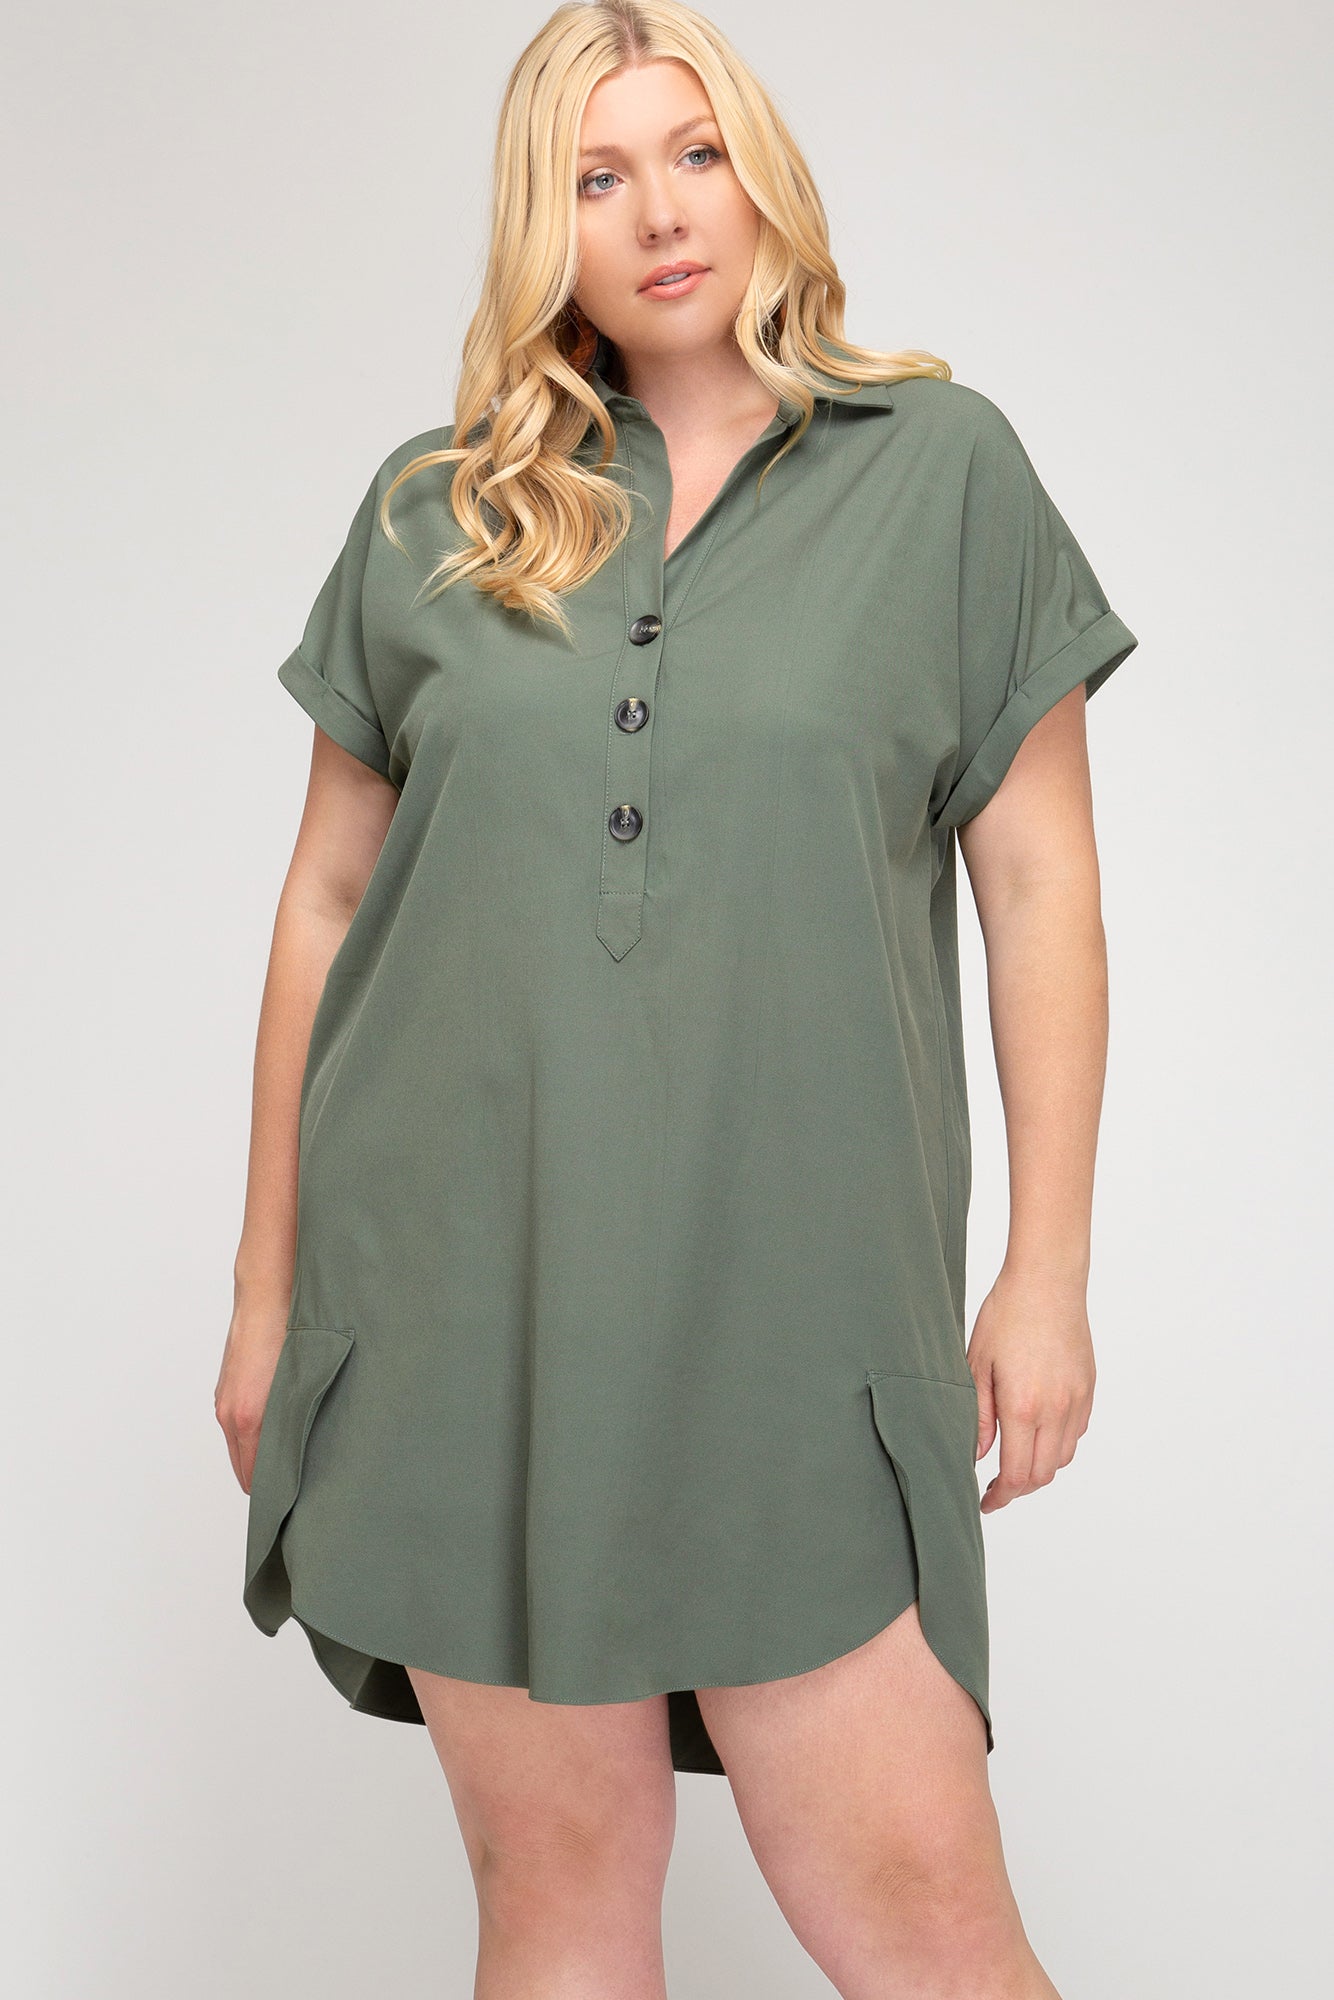 Amelia Olive Tunic Plus Size Dress